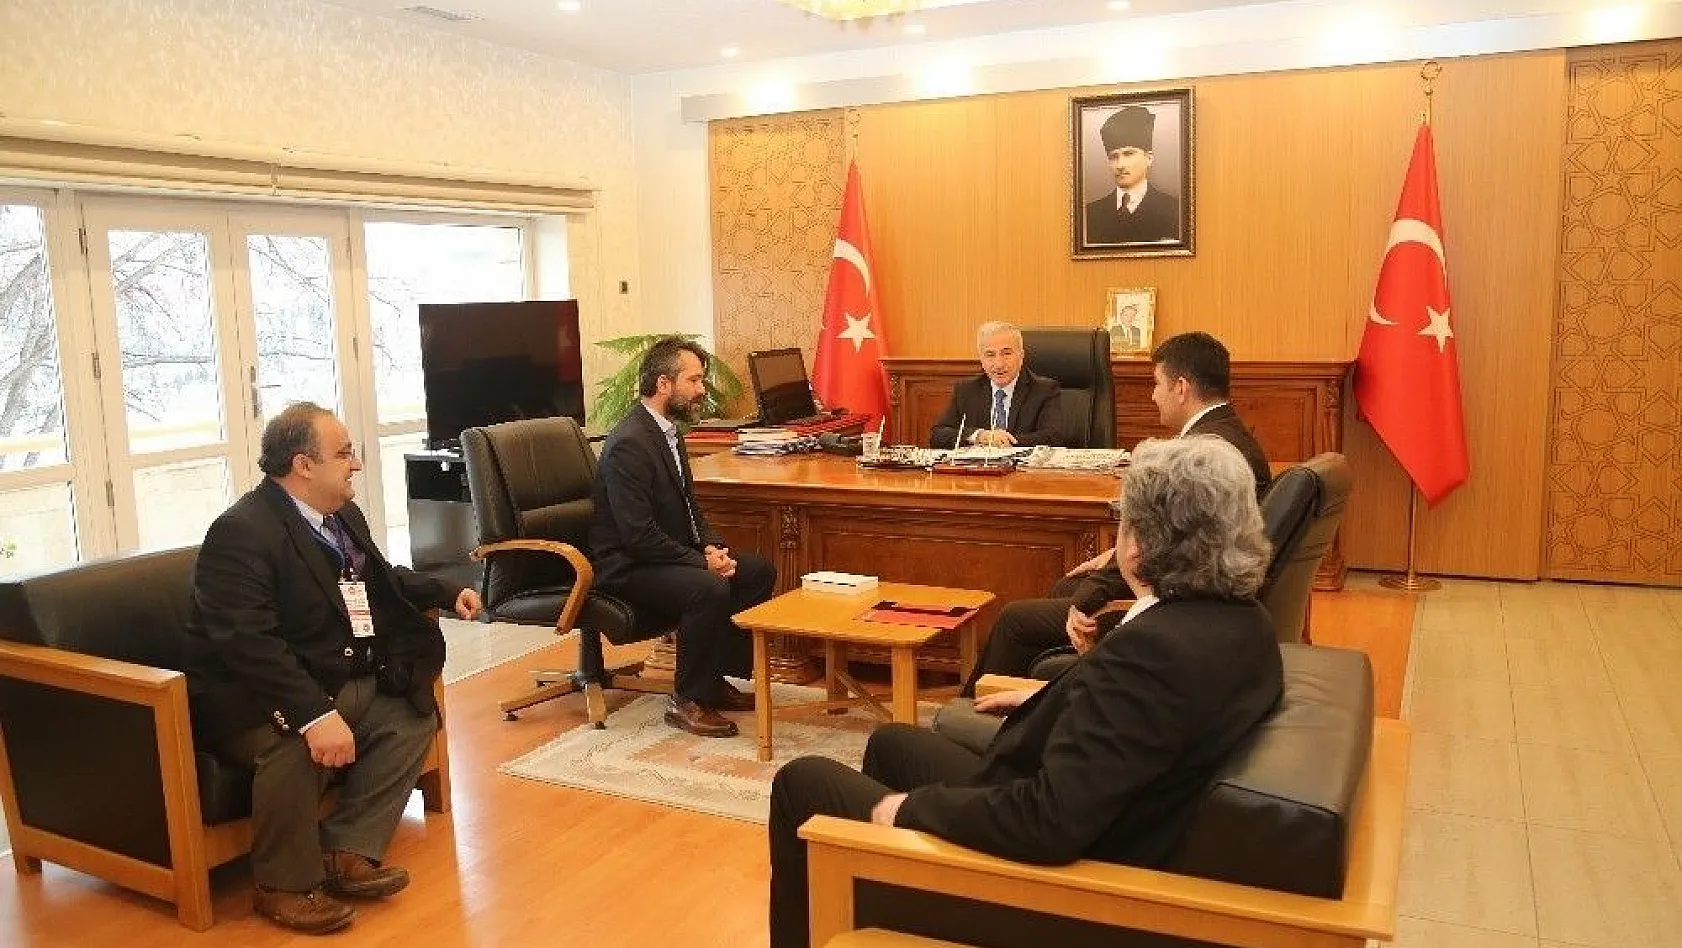 Kayseri'nin Kültürel ve Turizm Değerleri Tanıtılacak